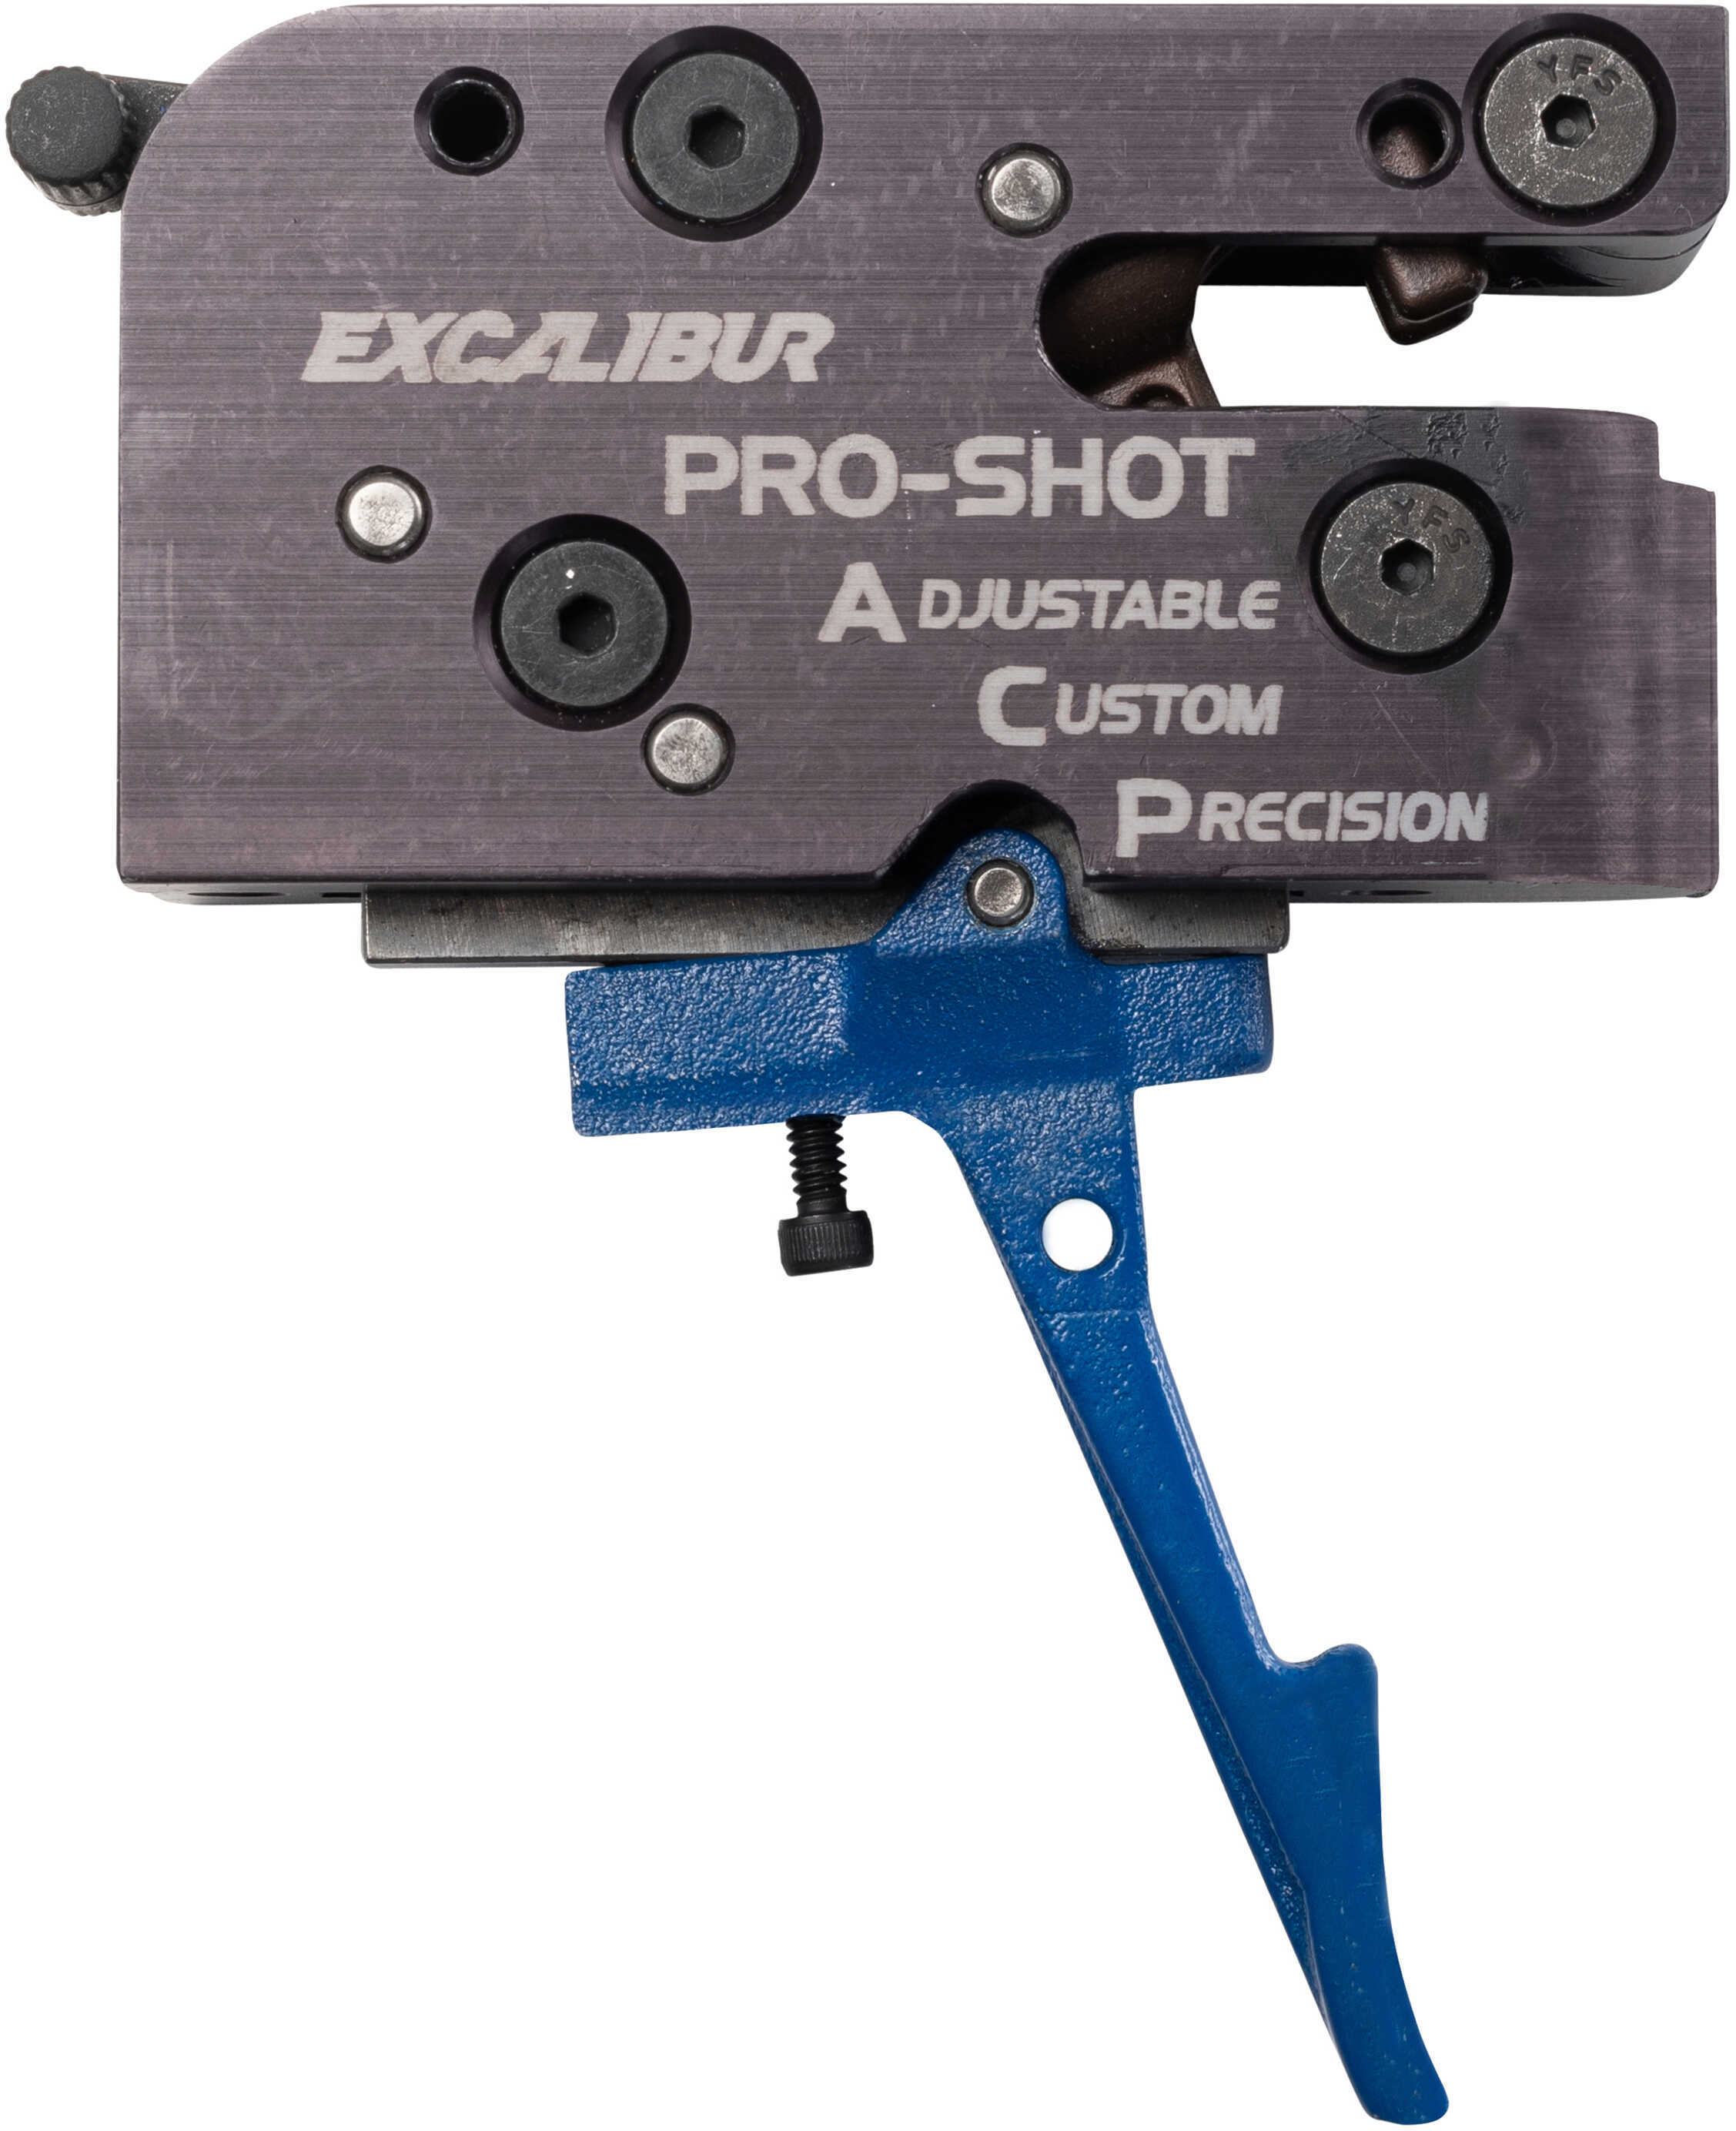 Excalibur Pro-shot ACP Trigger - fits most standard models